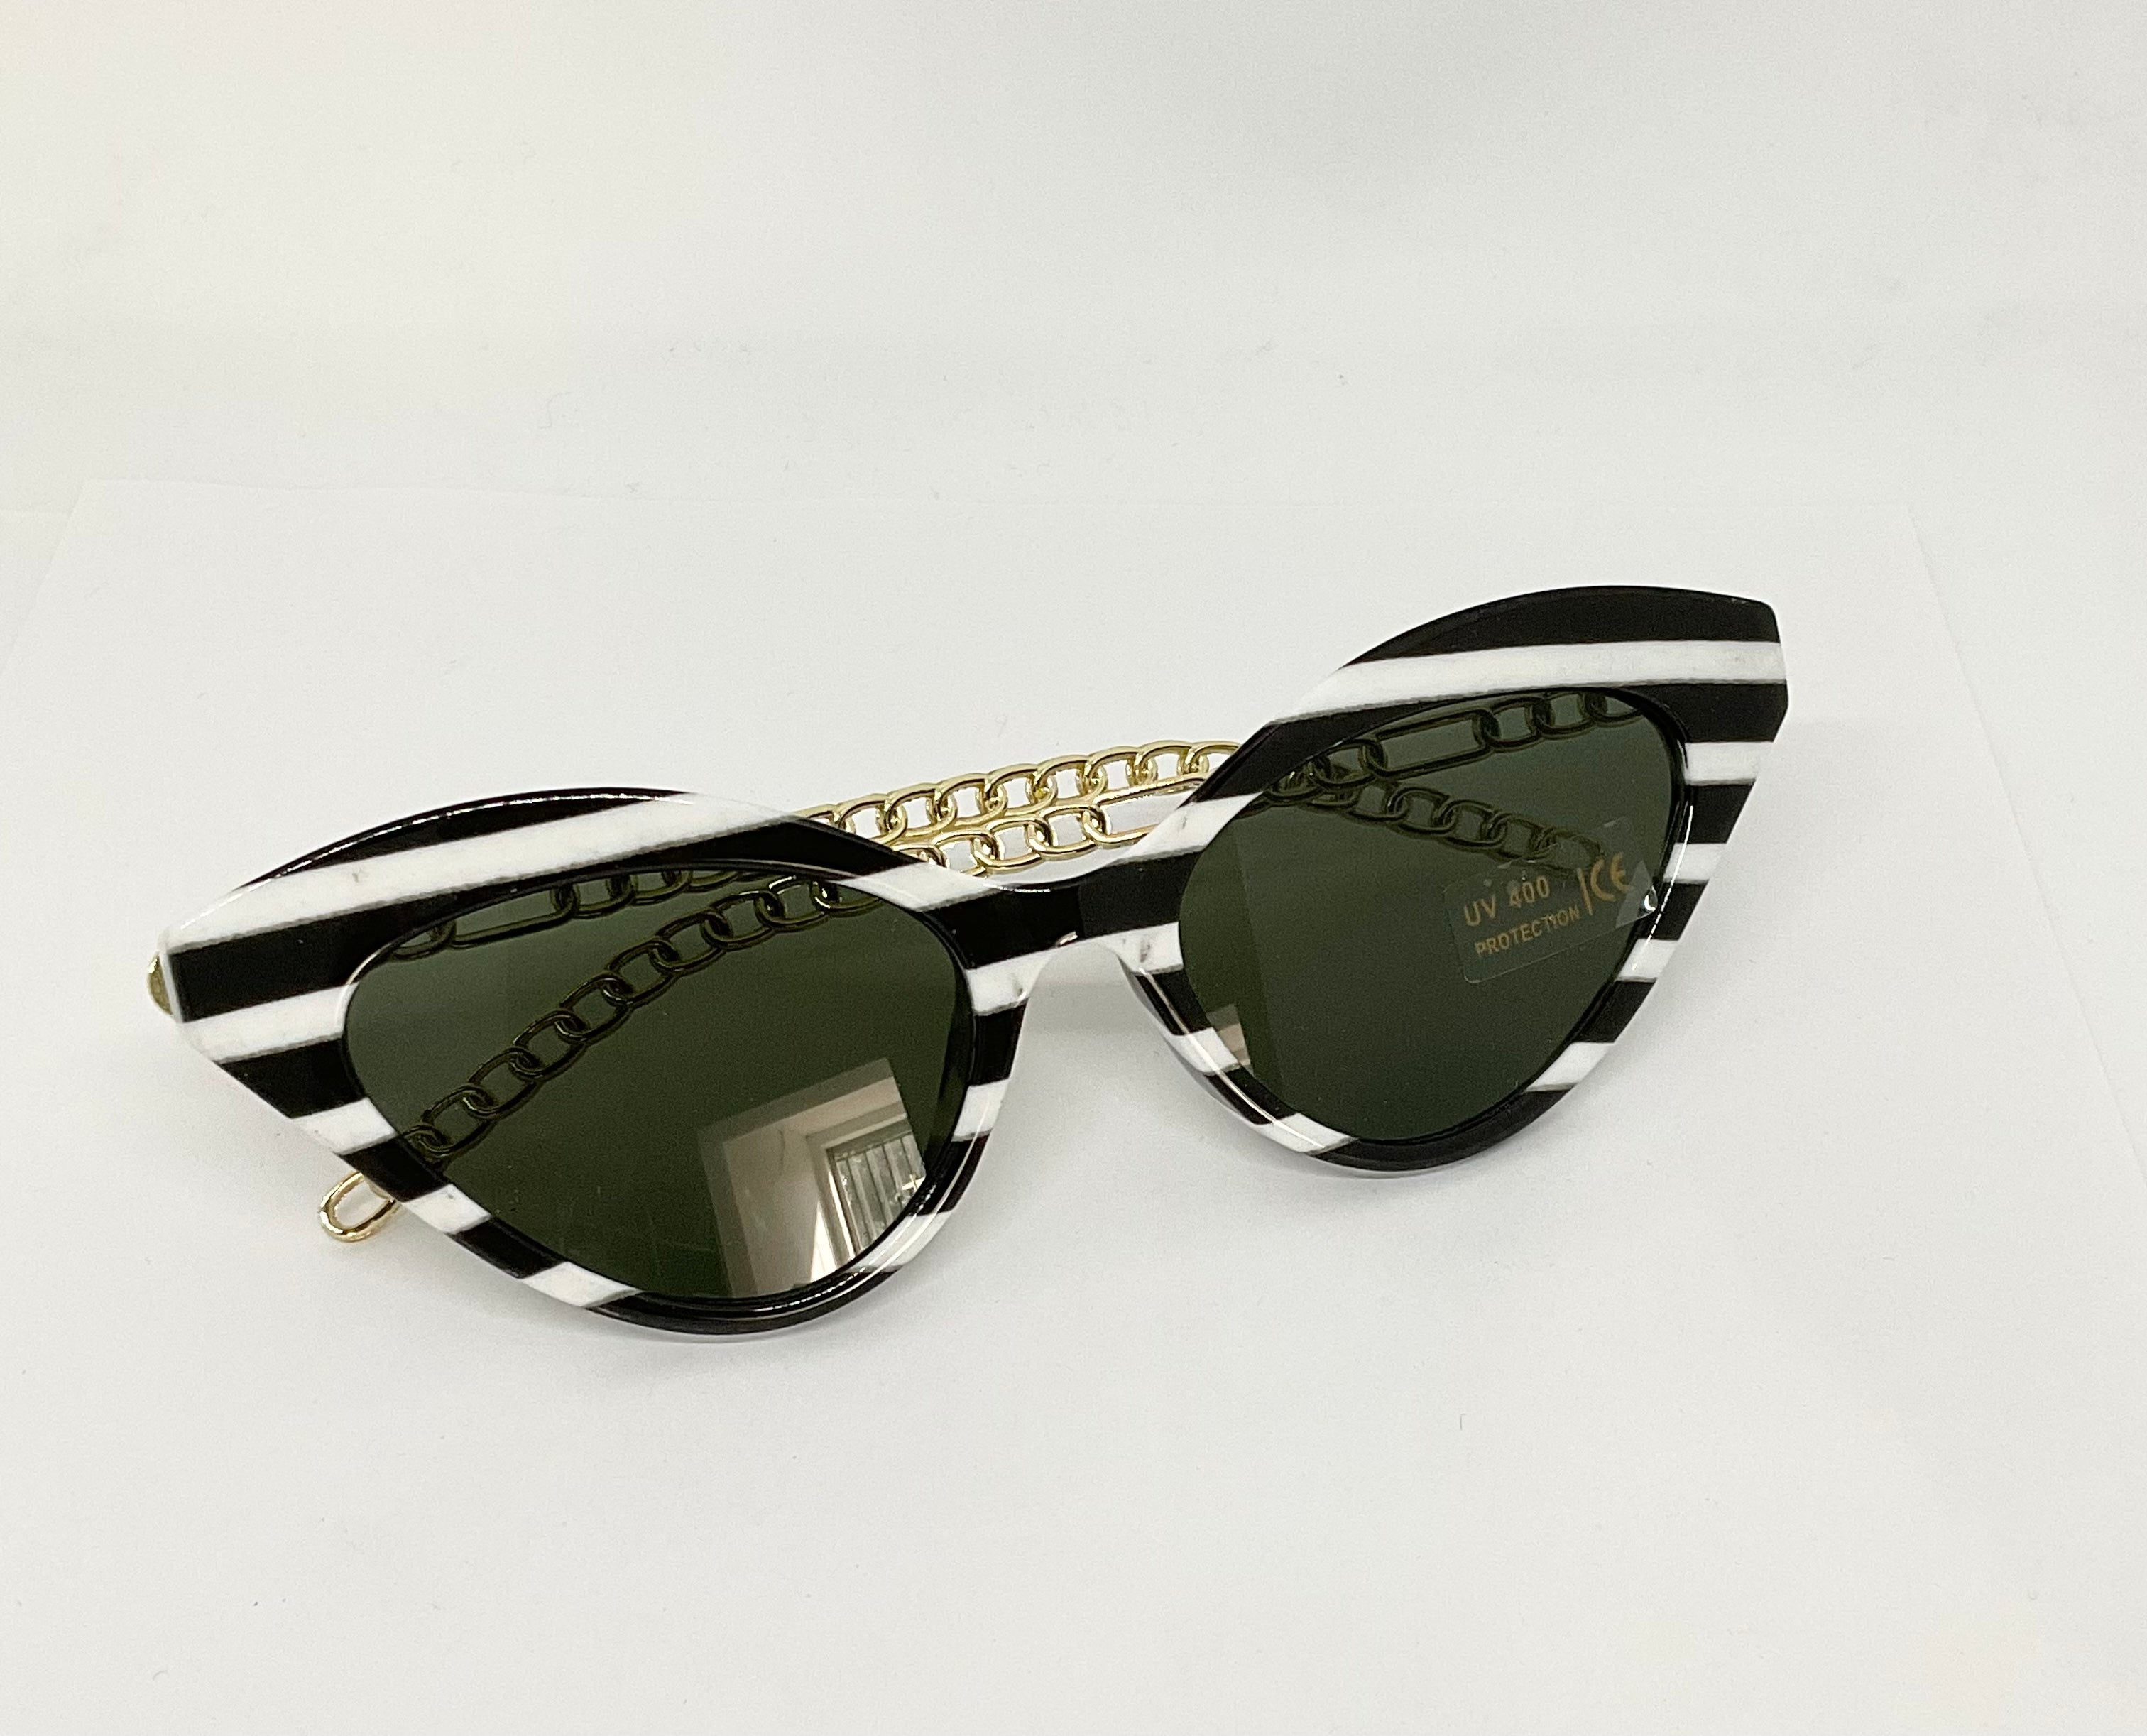 Art Moda Sunglasses Black/white Stripe